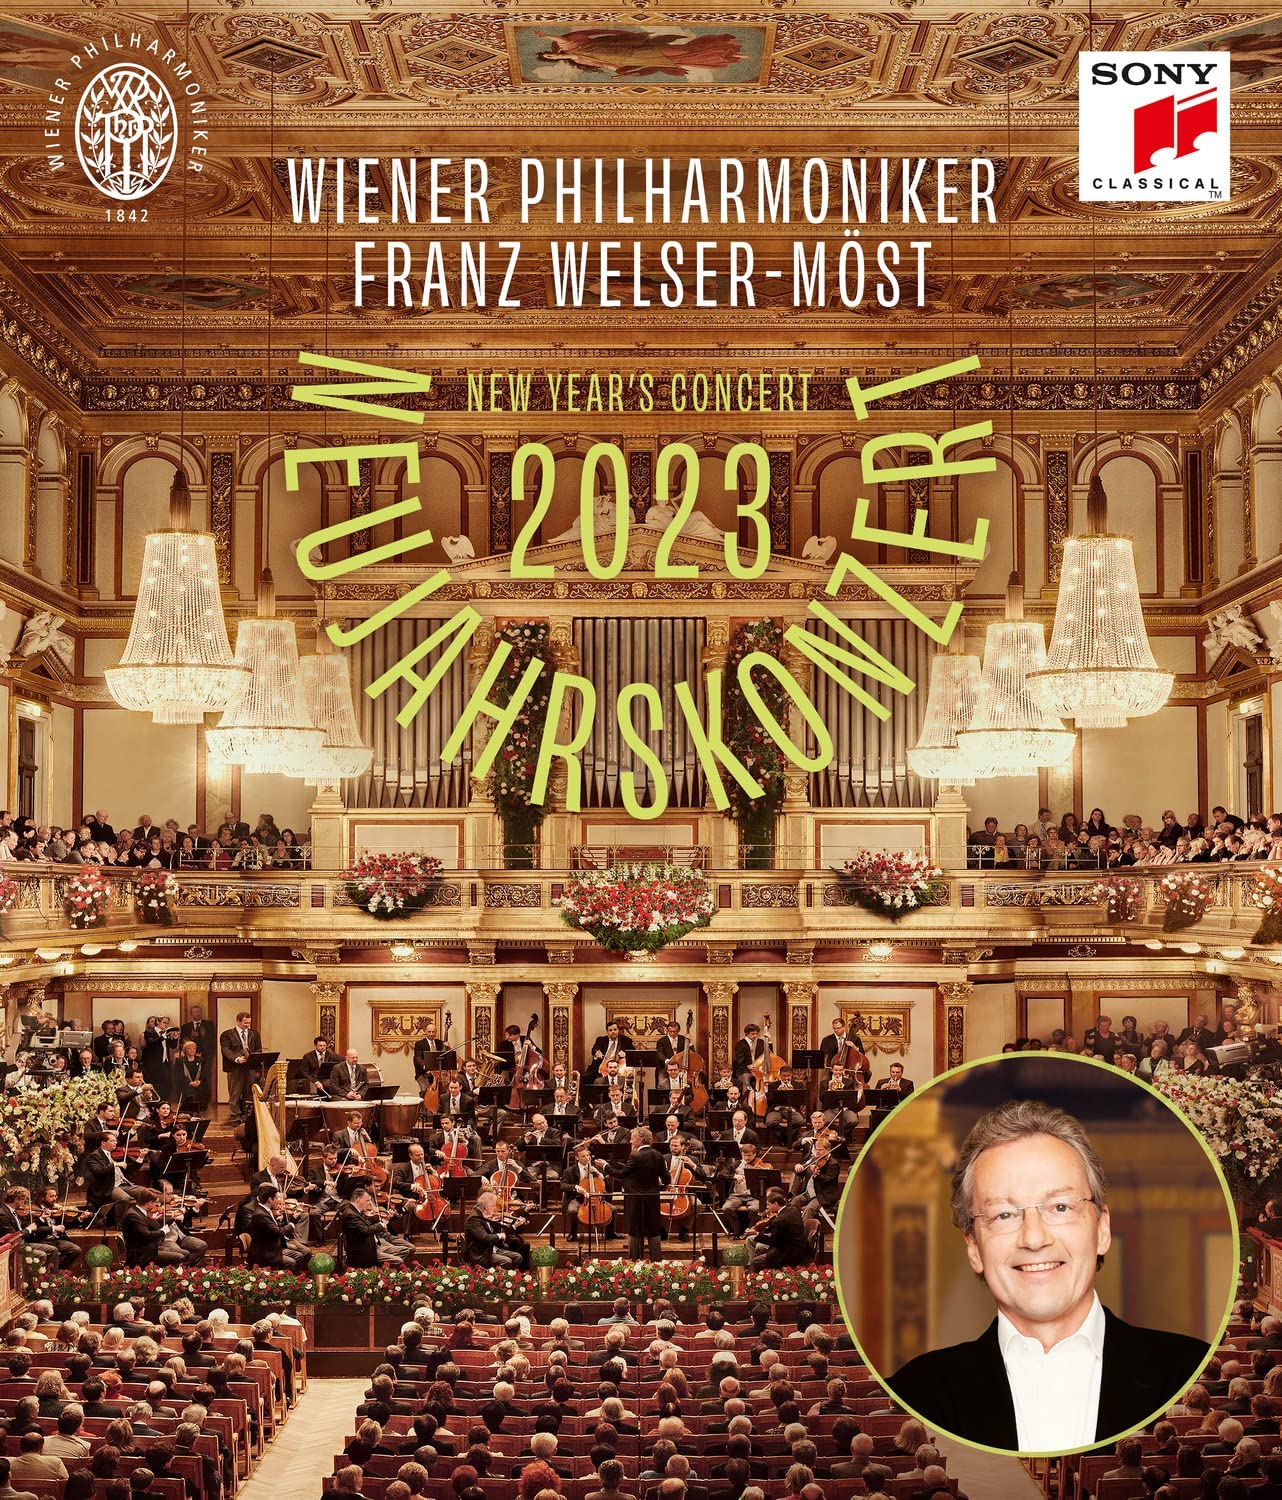 Neujahrskonzert 2023 / New Year's Concert 2023 (Blu-ray Disc) | Wiener Philharmoniker, Franz Welser-Most